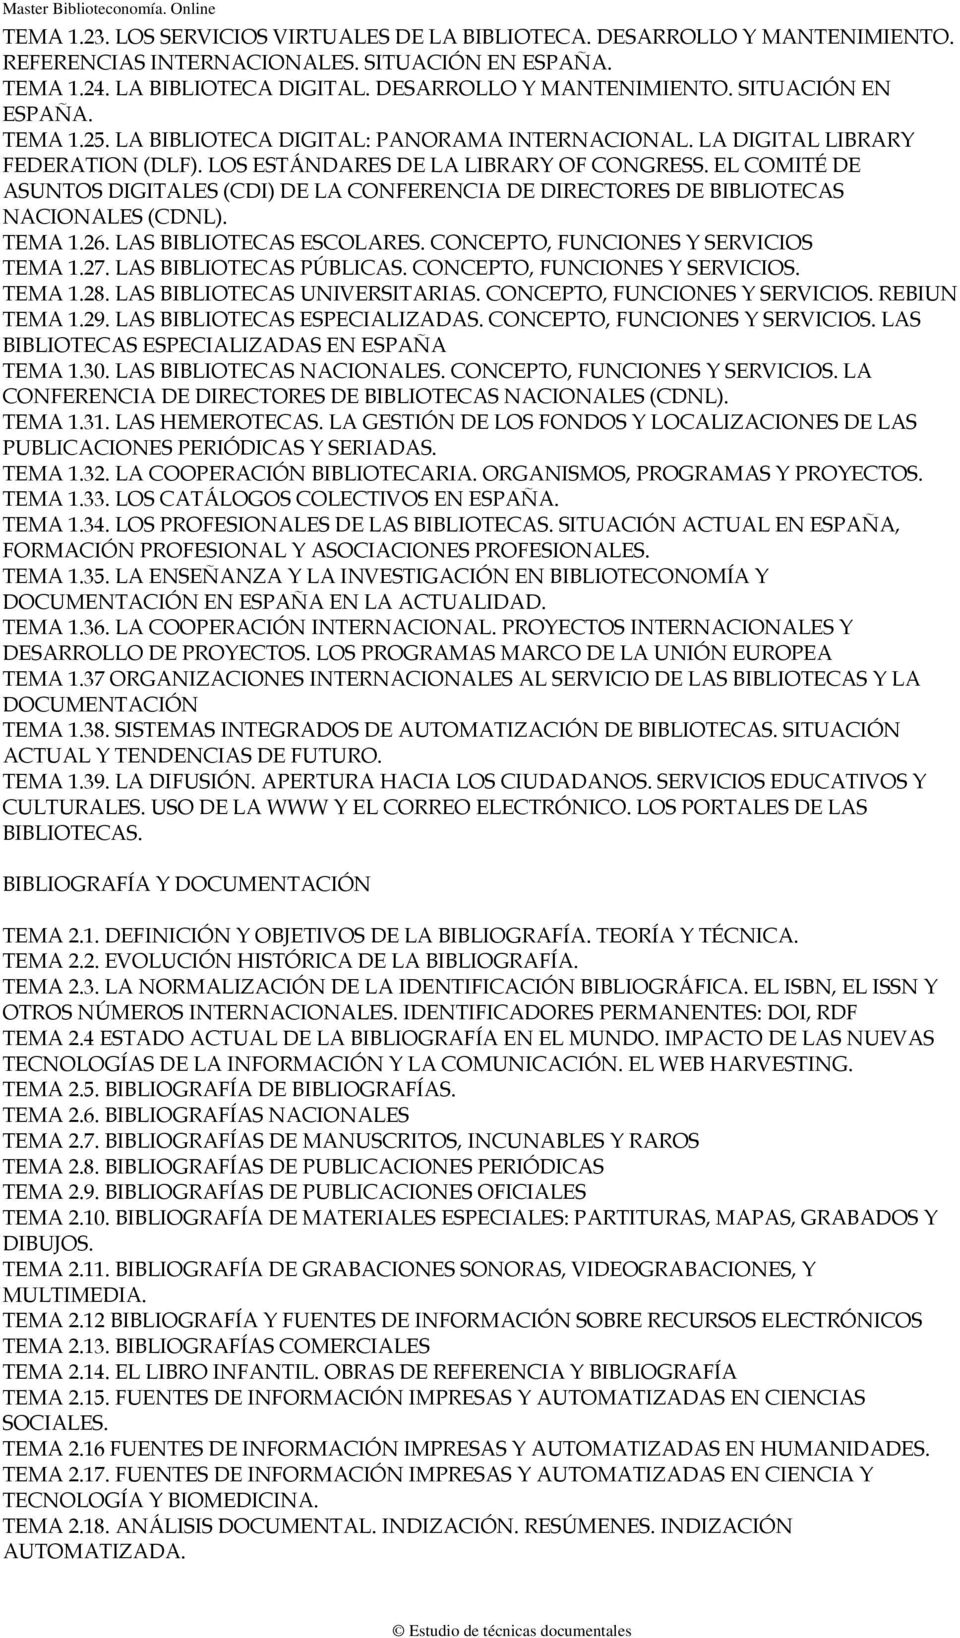 EL COMITÉ DE ASUNTOS DIGITALES (CDI) DE LA CONFERENCIA DE DIRECTORES DE BIBLIOTECAS NACIONALES (CDNL). TEMA 1.26. LAS BIBLIOTECAS ESCOLARES. CONCEPTO, FUNCIONES Y SERVICIOS TEMA 1.27.